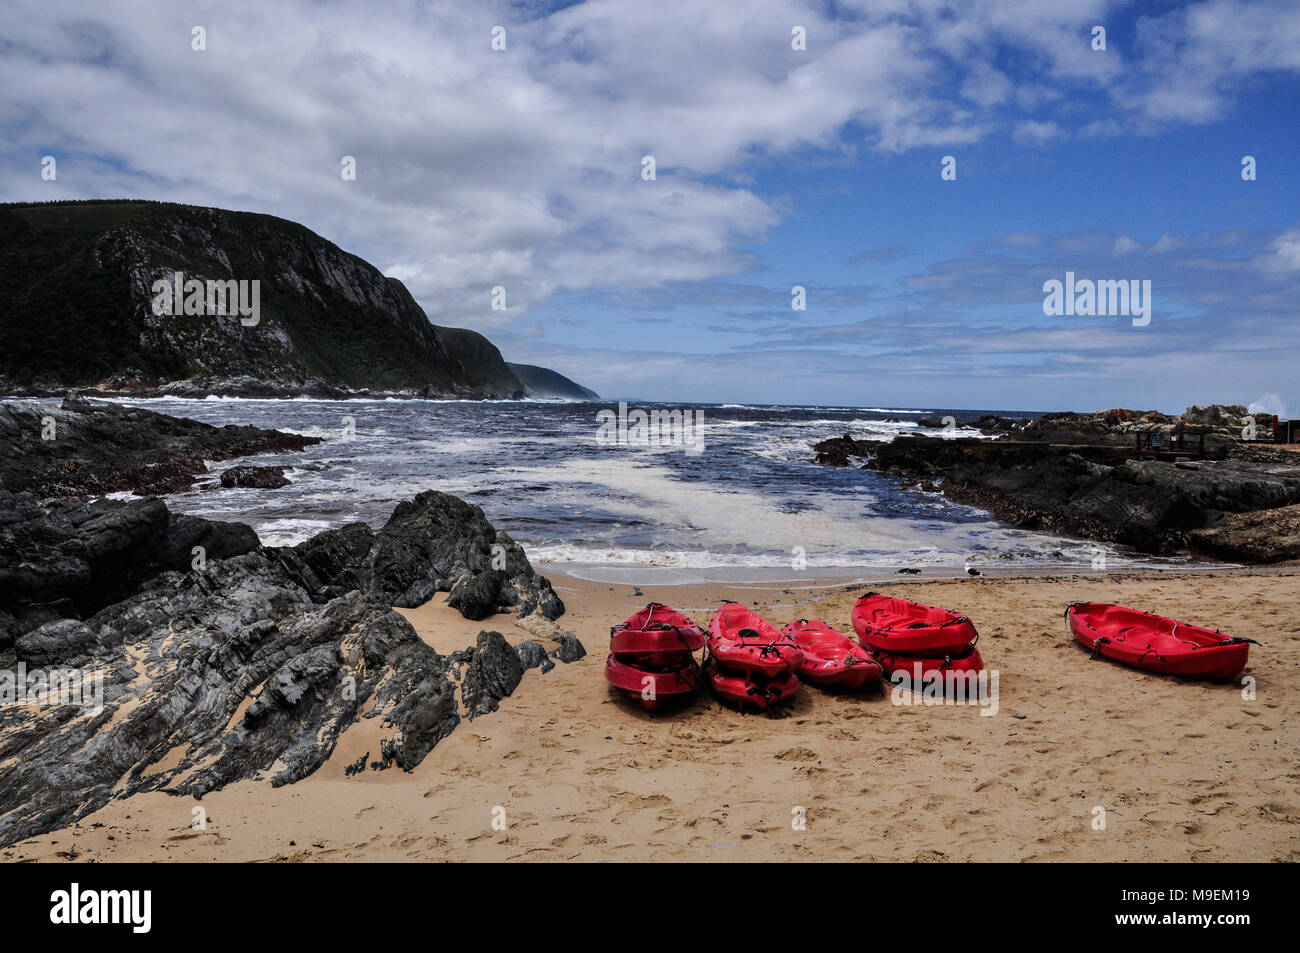 El paisaje y la playa del Parque Nacional Tsitsikamma con kayaks rojo listo para un tour de aventura. Ruta Jardín, Sudáfrica Foto de stock